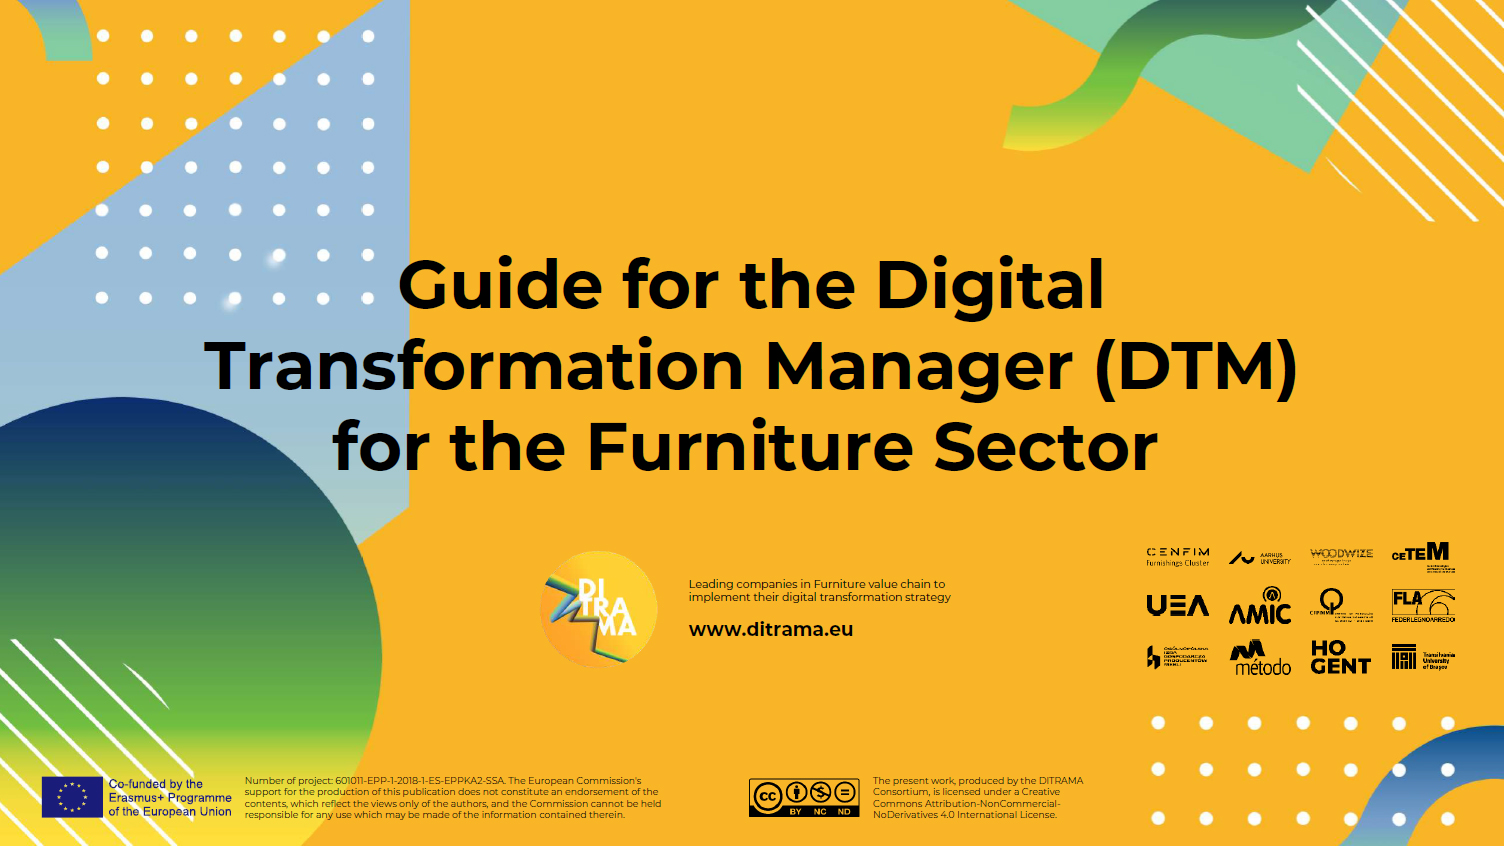 De handleiding voor de “Digital Transformation Manager” (DTM) voor de meubelsector